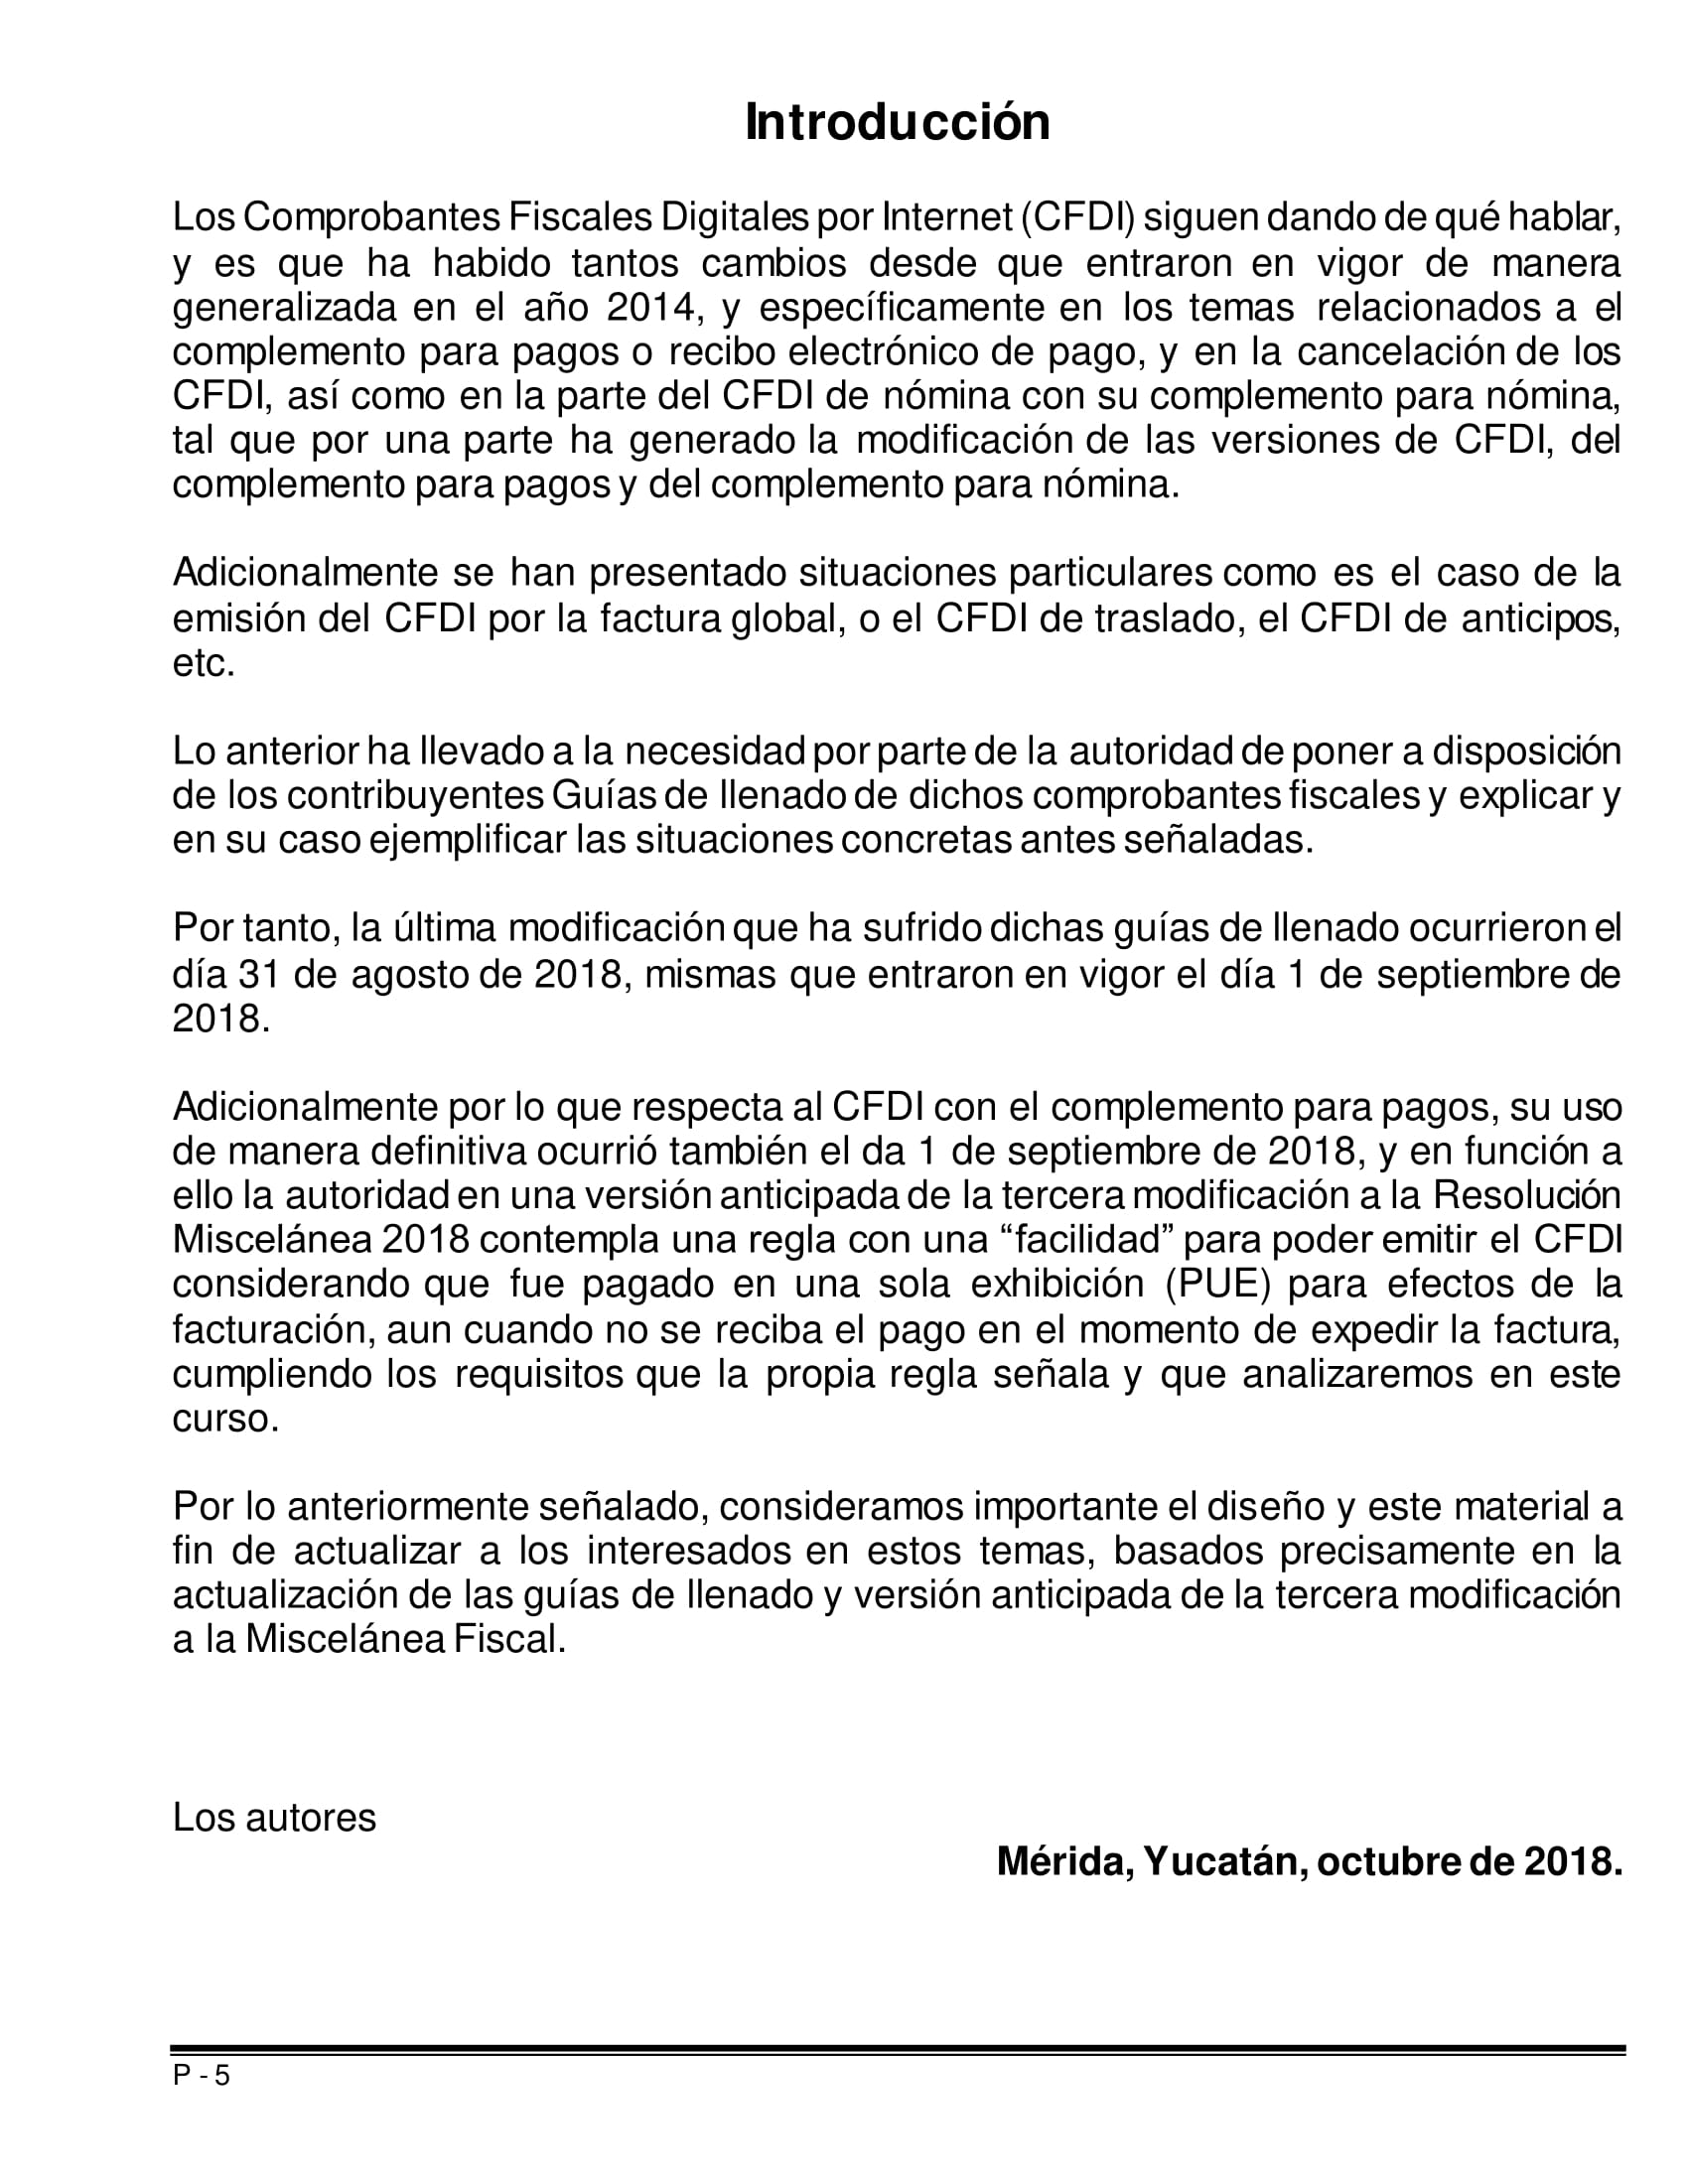 Libro_CFDI_2018_Actualizacion_Guias-Llenado-05